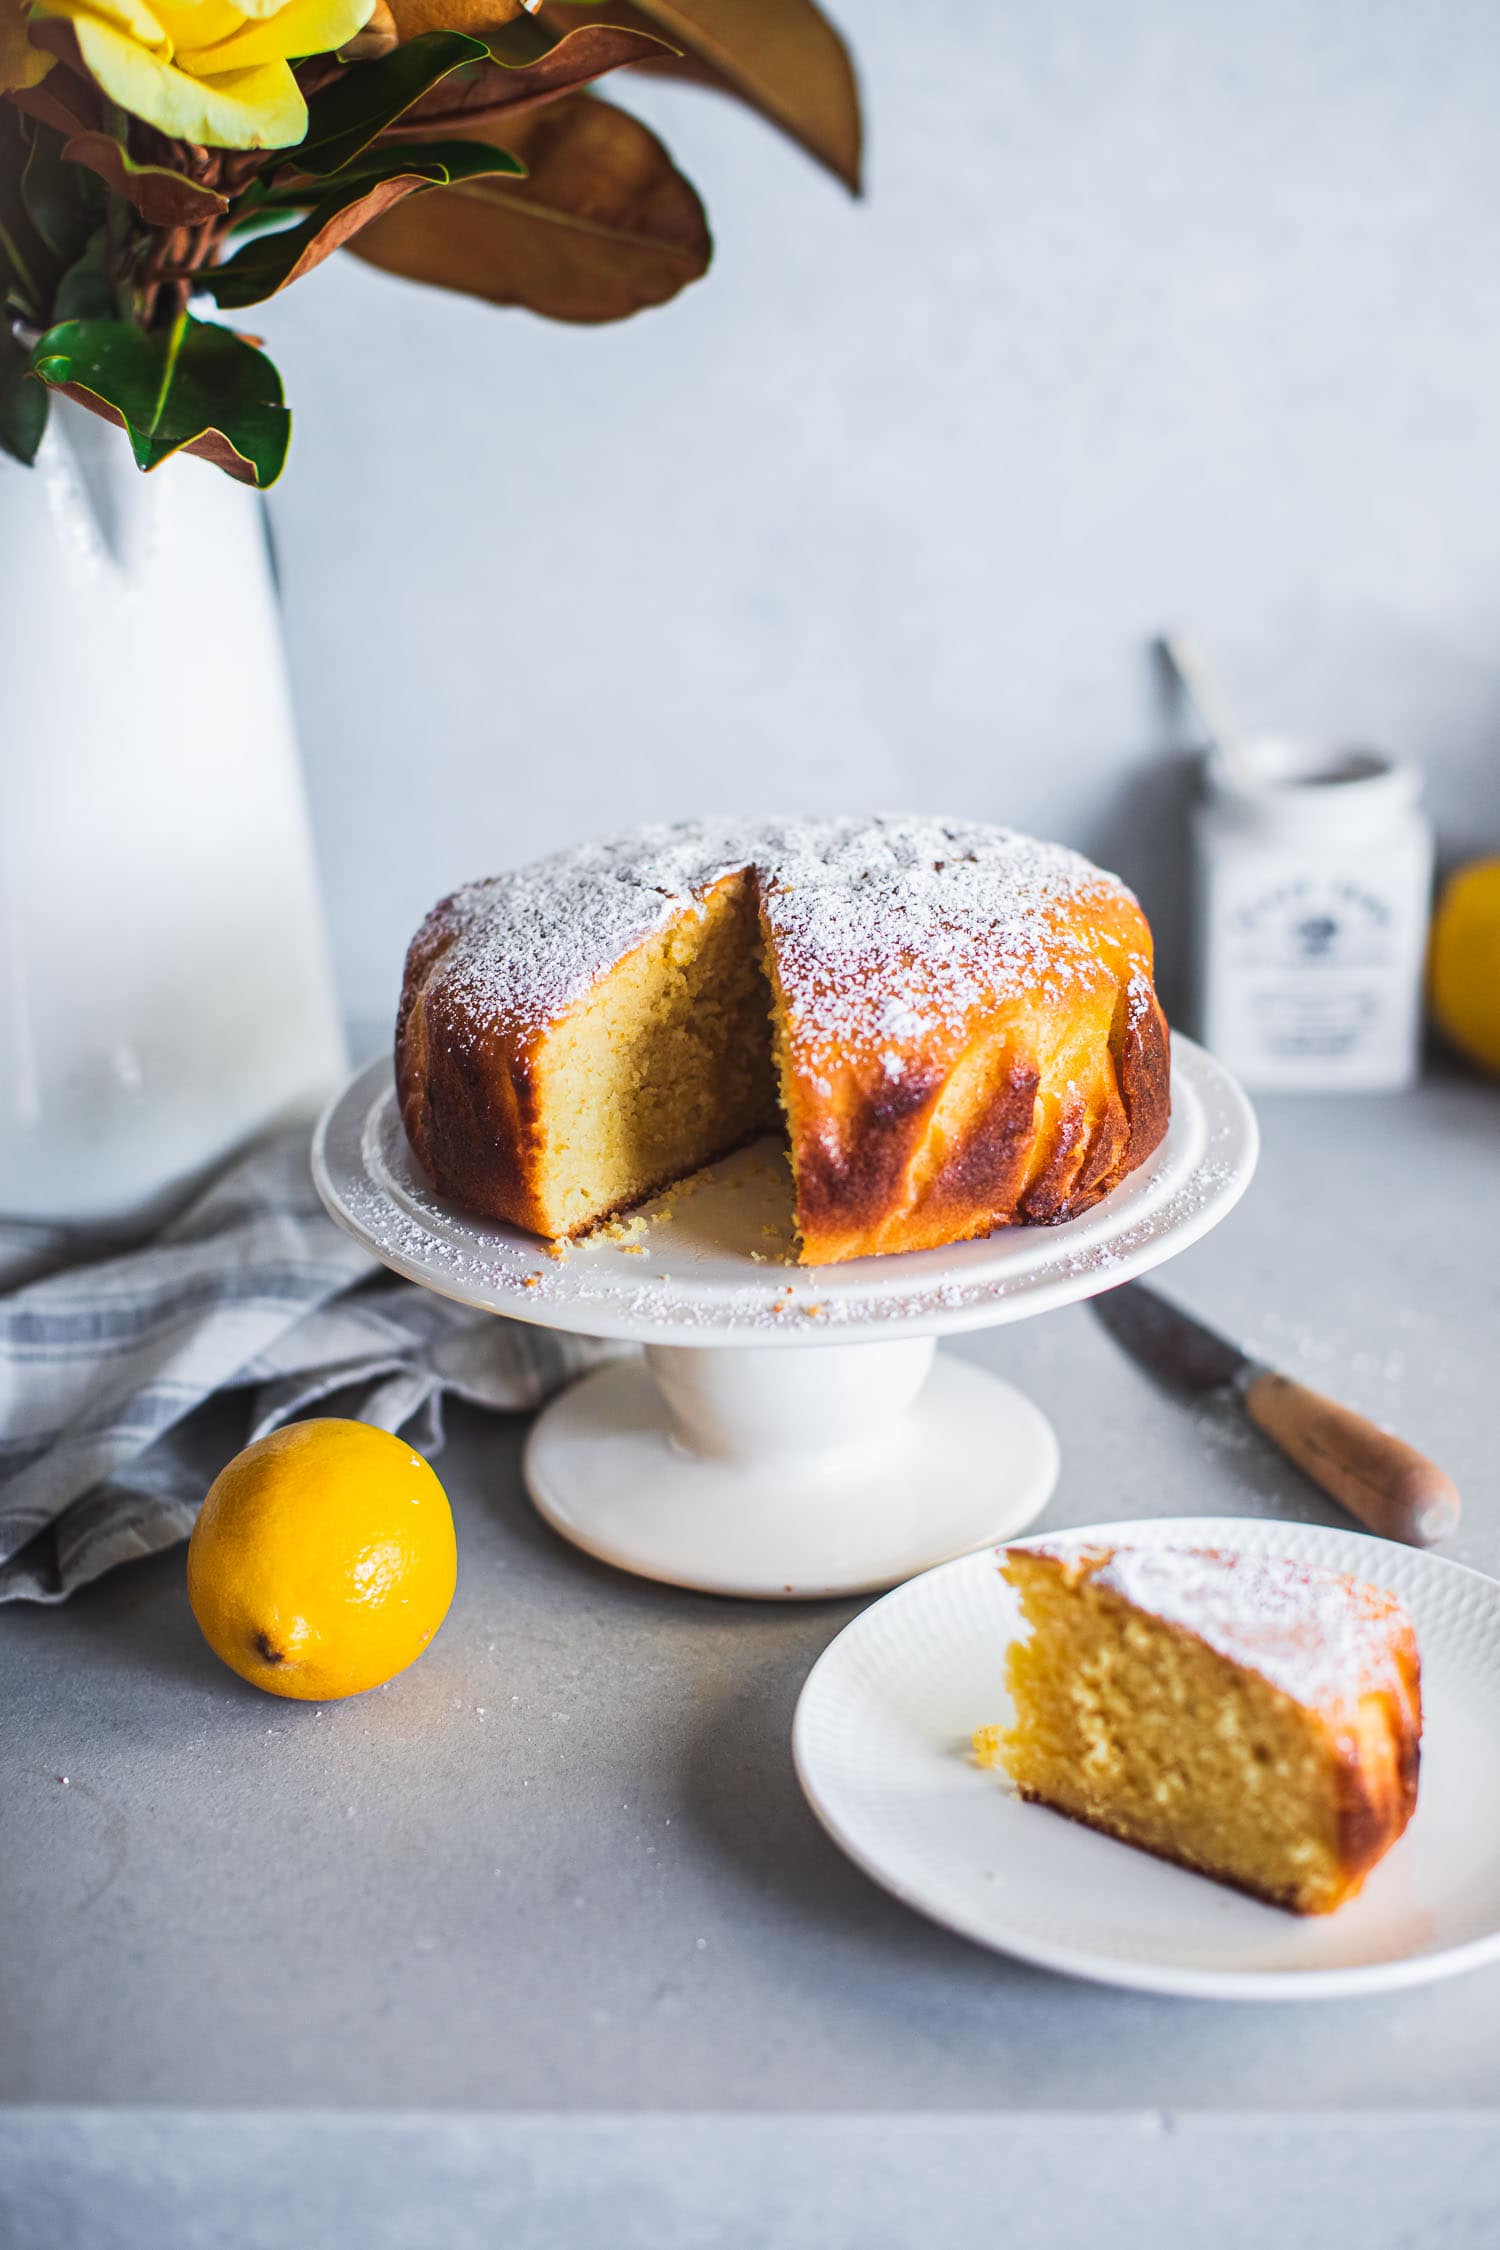 A whole baked lemon cake on a cake stand, a lemon cake slice served on a plate, lemons and tea towel on a kitchen counter.